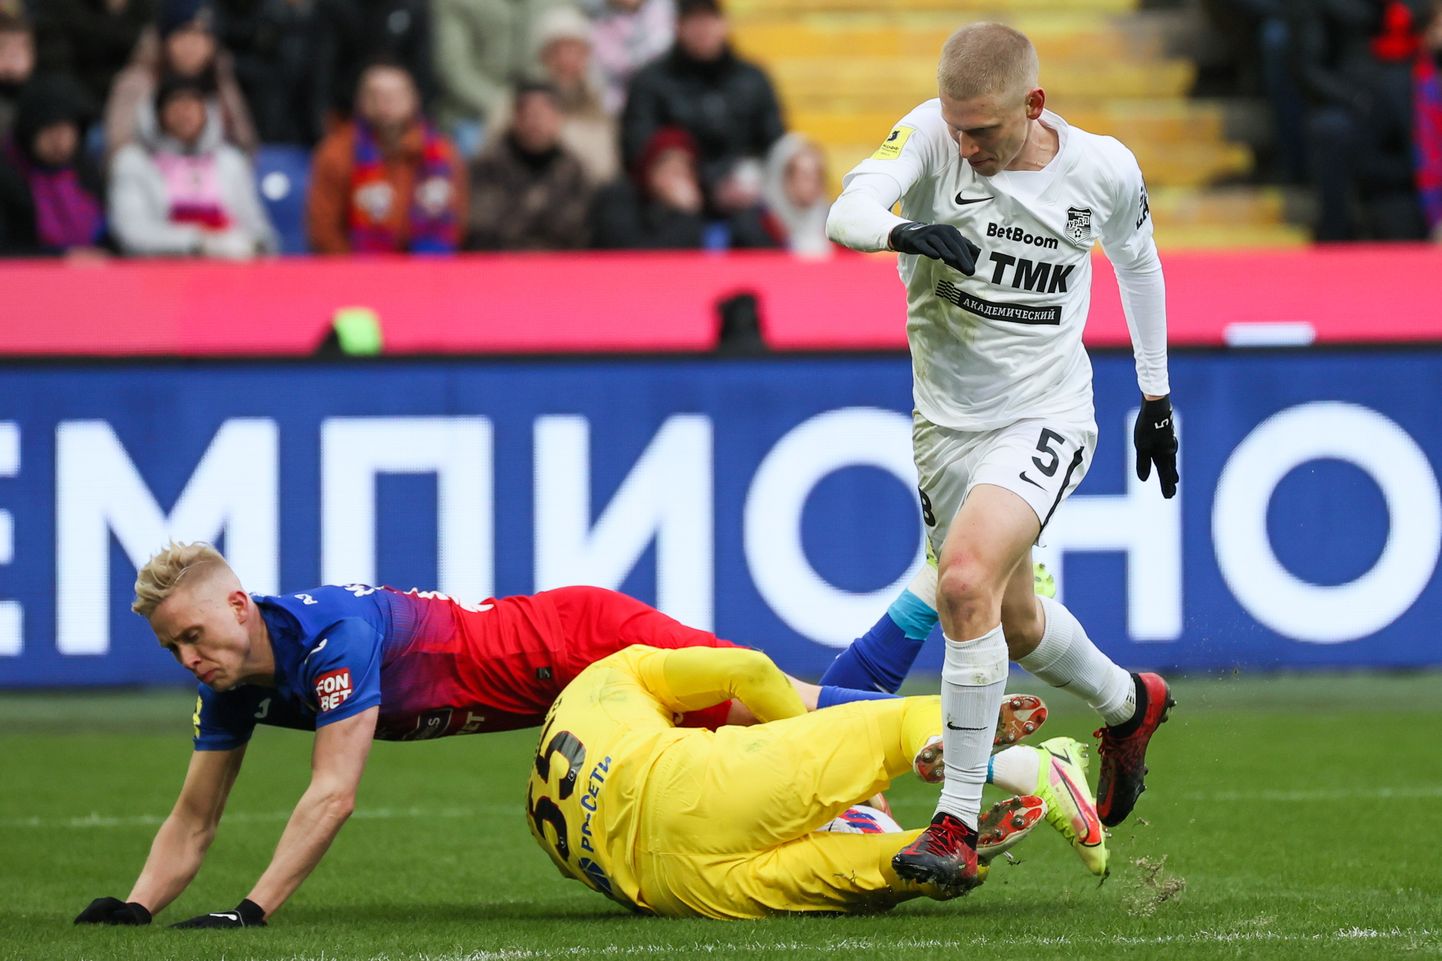 Футбол, Премьер-Лига, игровой момент, Акинфеев упал в ходе столкновения футболистов. Архивное фото.